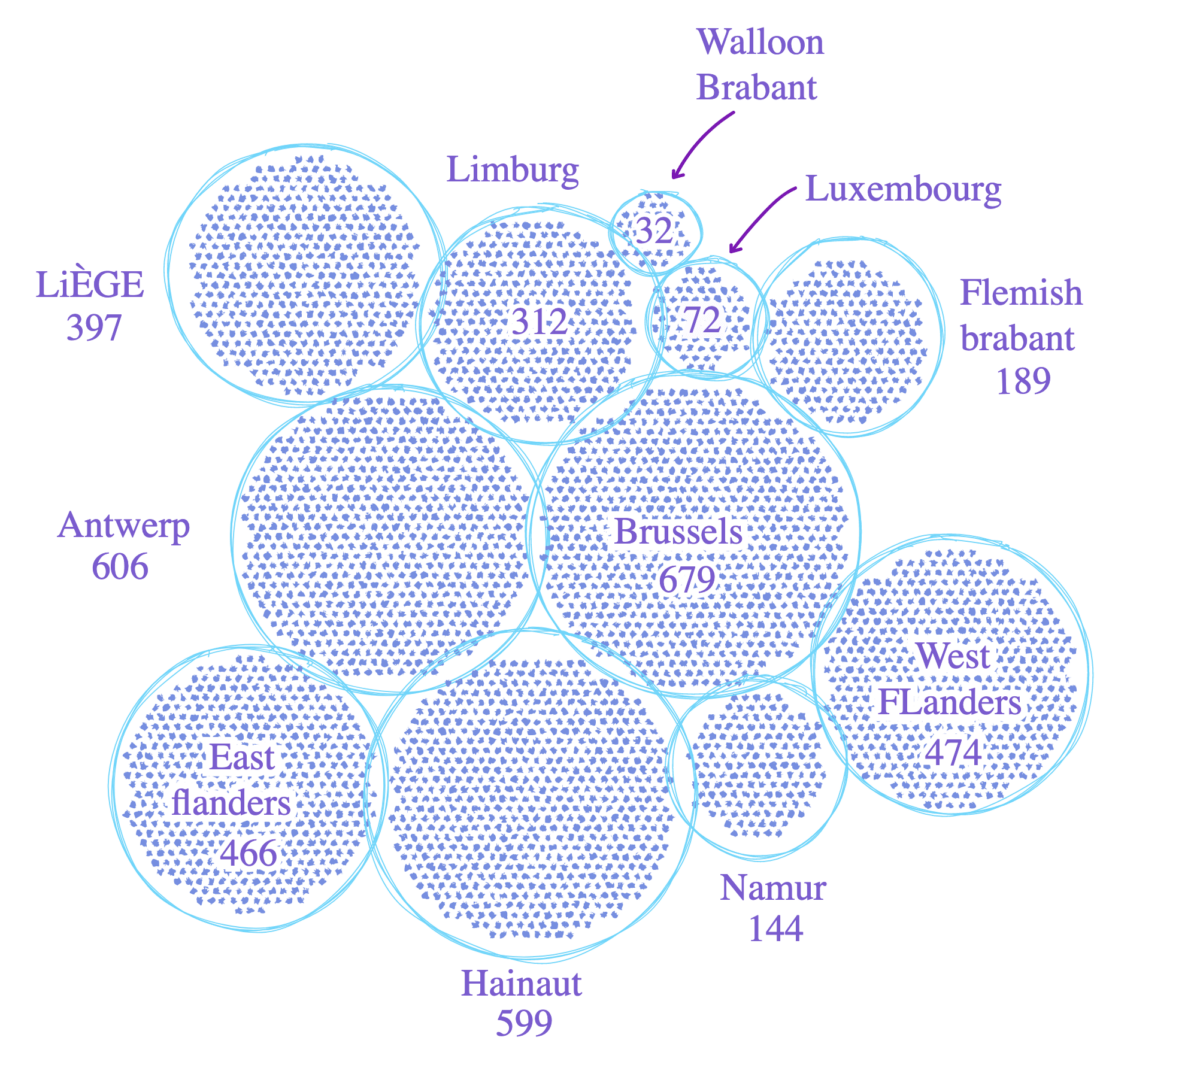 A bubble chart breaking down hospital beds in each region